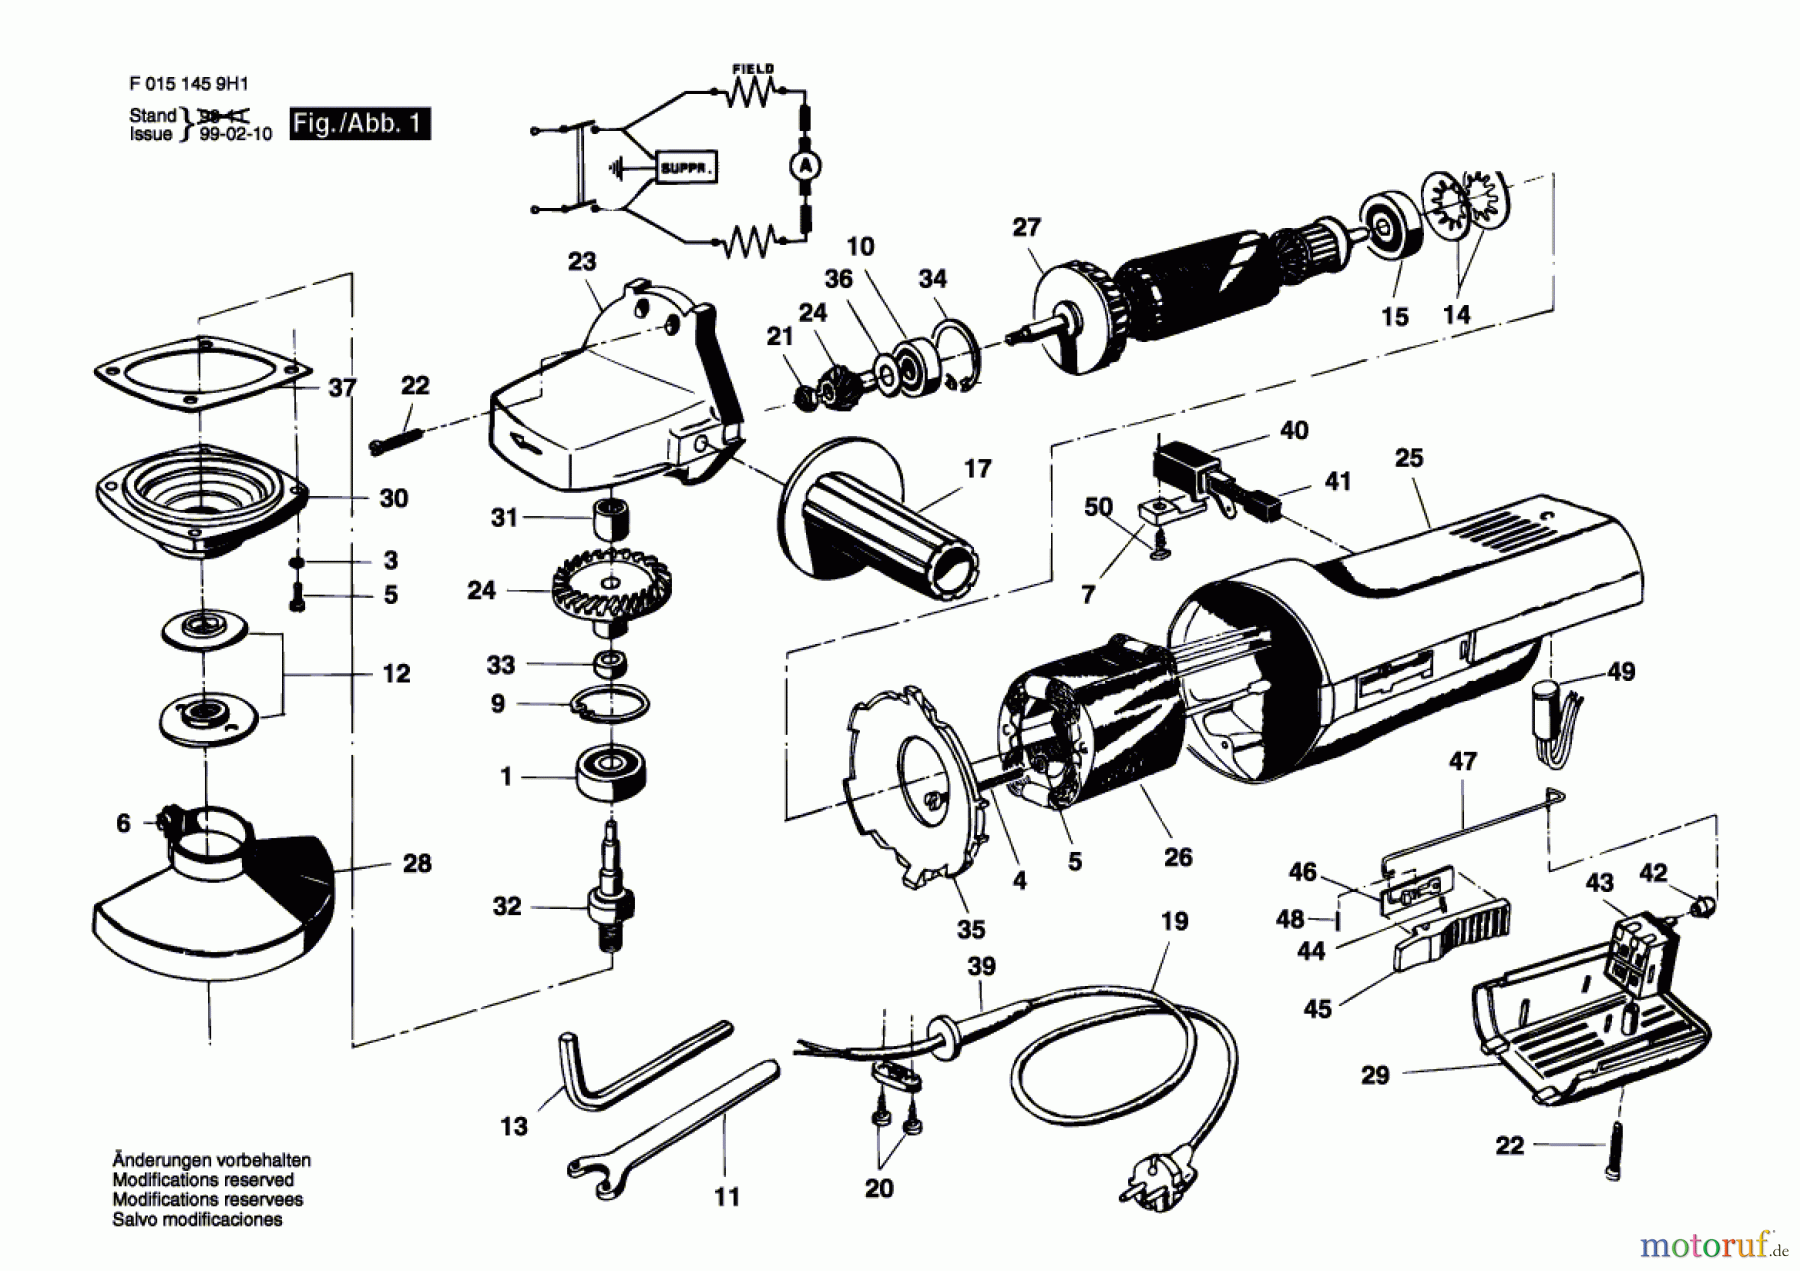  Bosch Werkzeug Winkelschleifer 1459H1 Seite 1